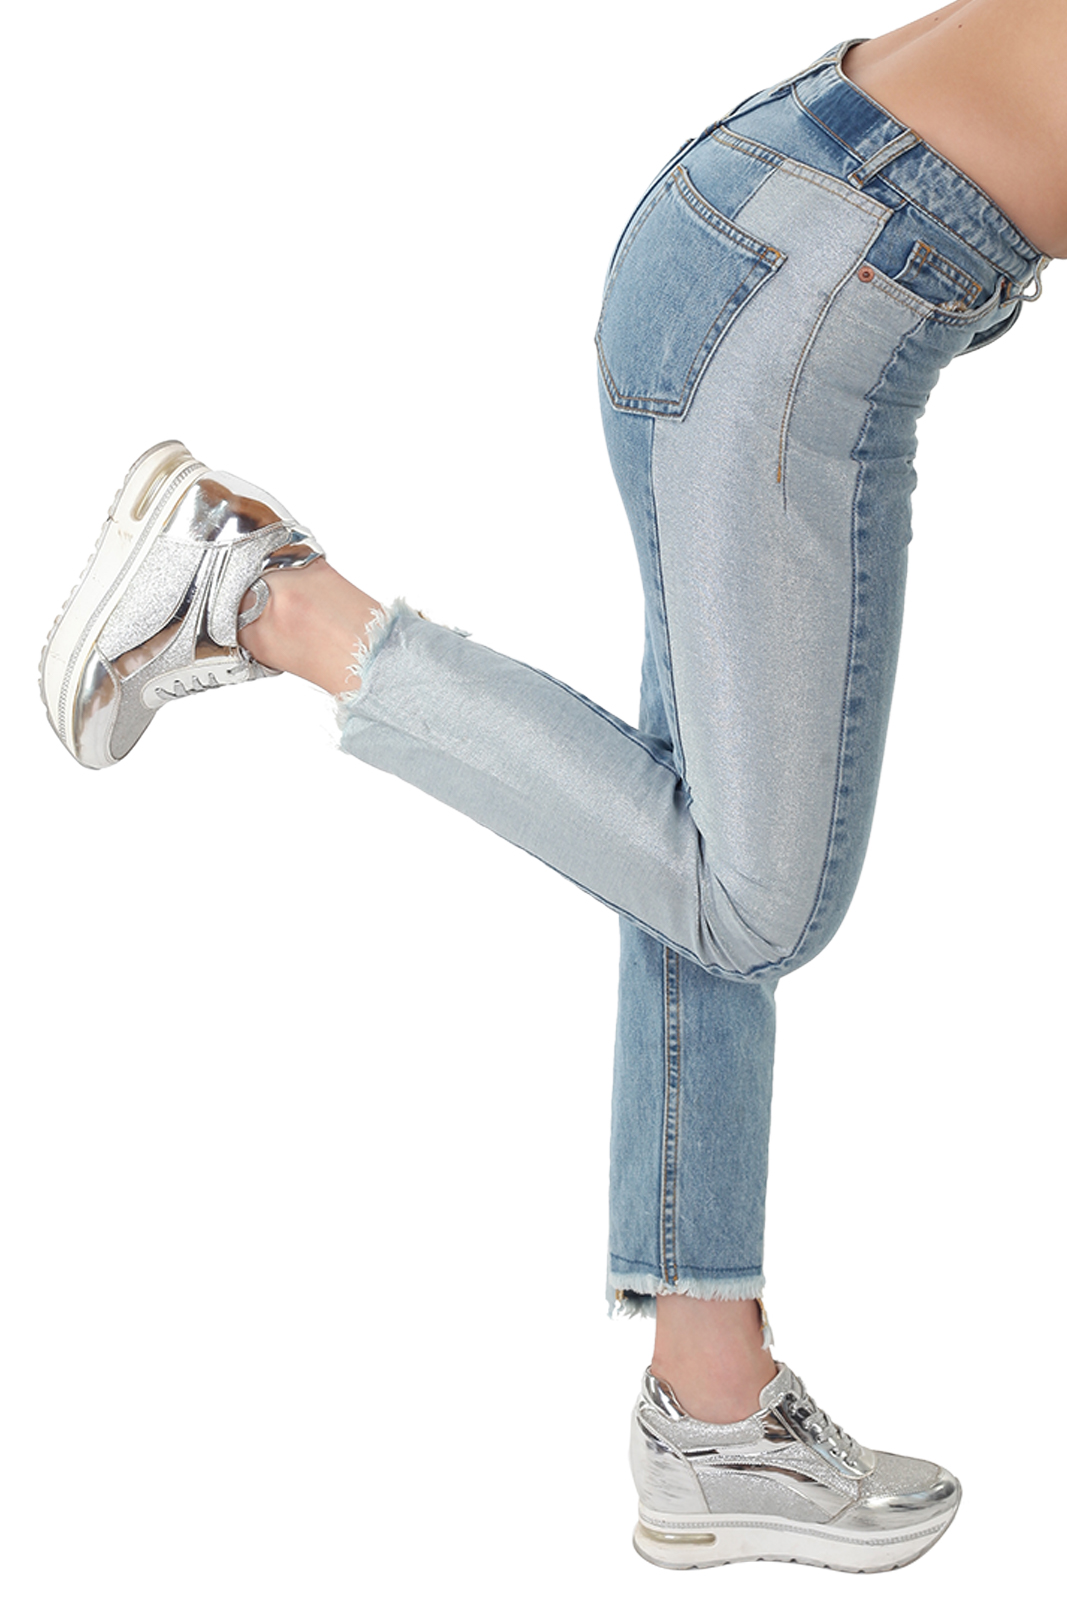 Купить в интернет магазине красивые женские джинсы с бахромой